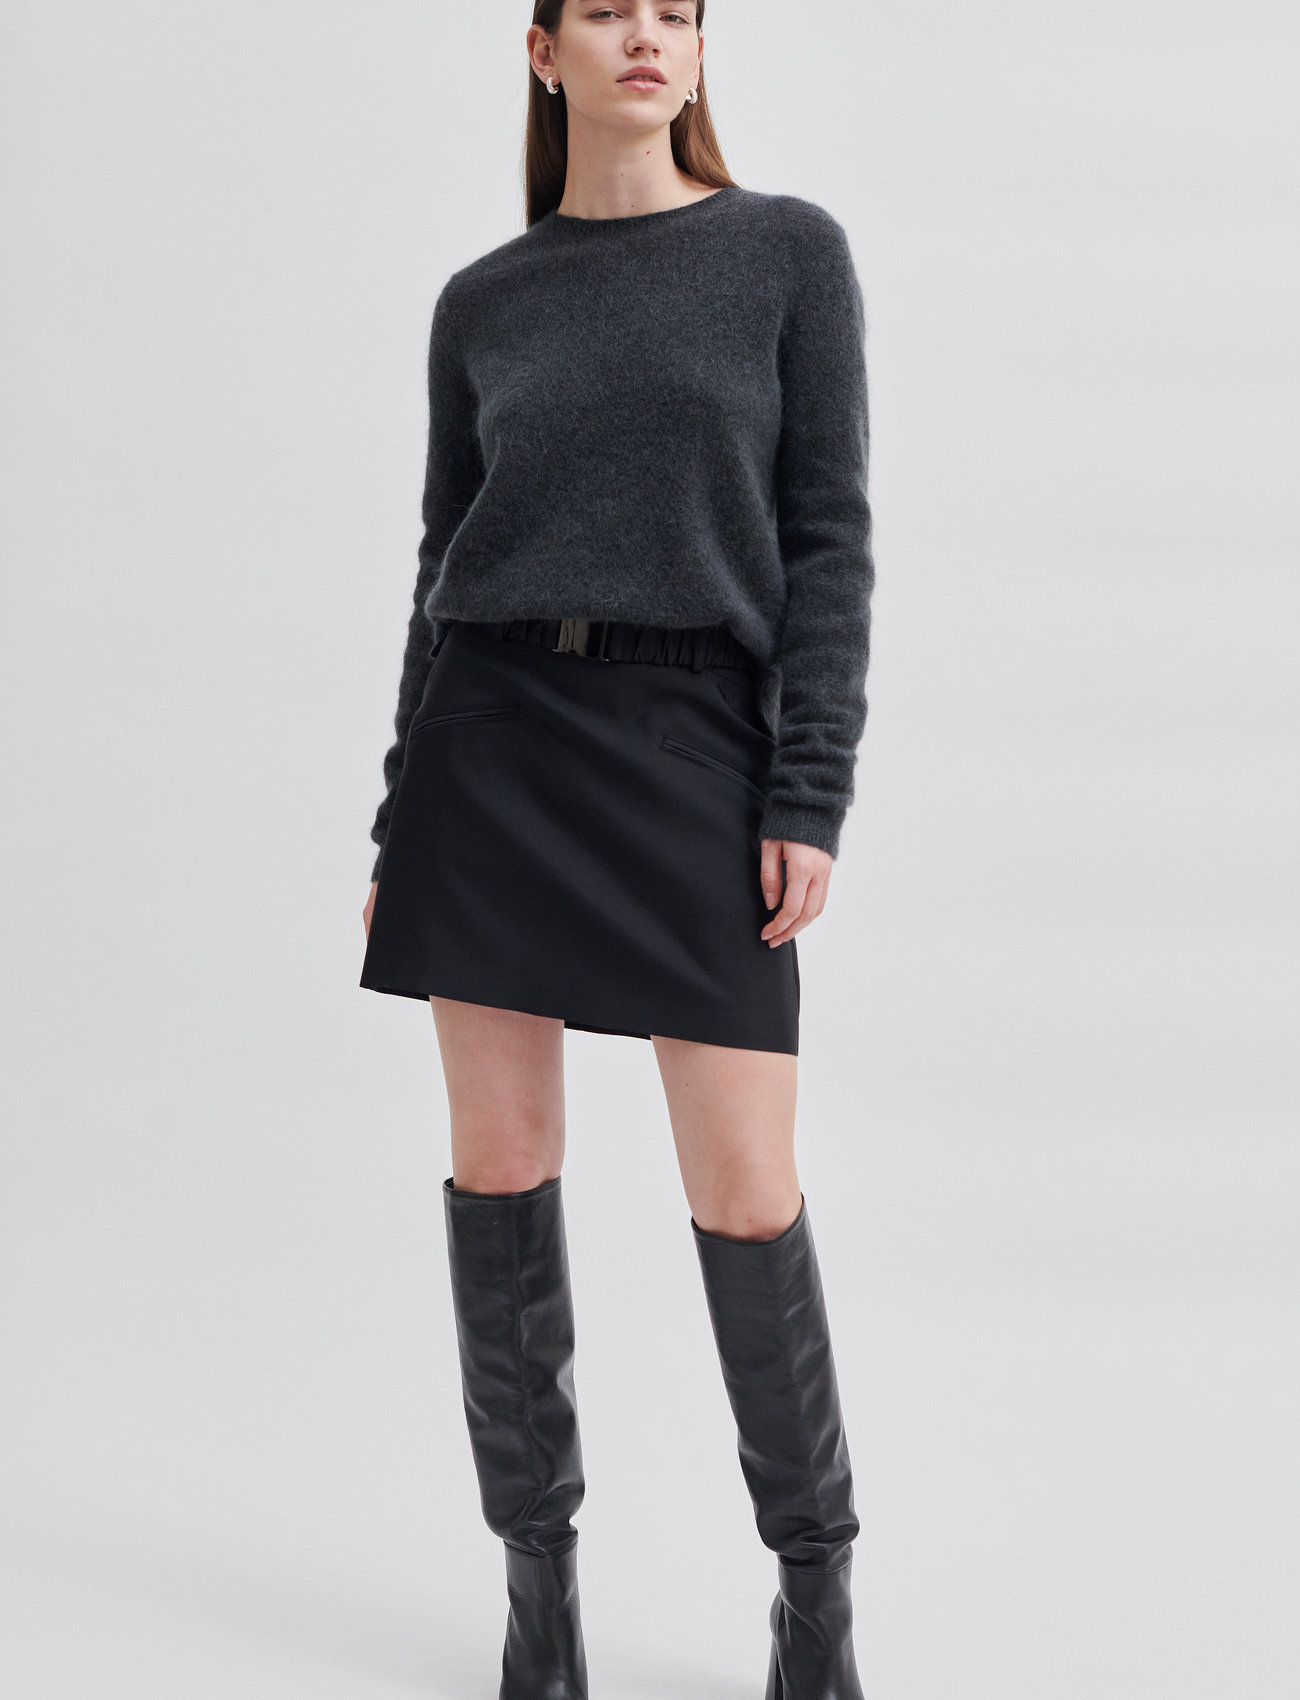 Second Female - Elegance New Skirt - short skirts - black - 1